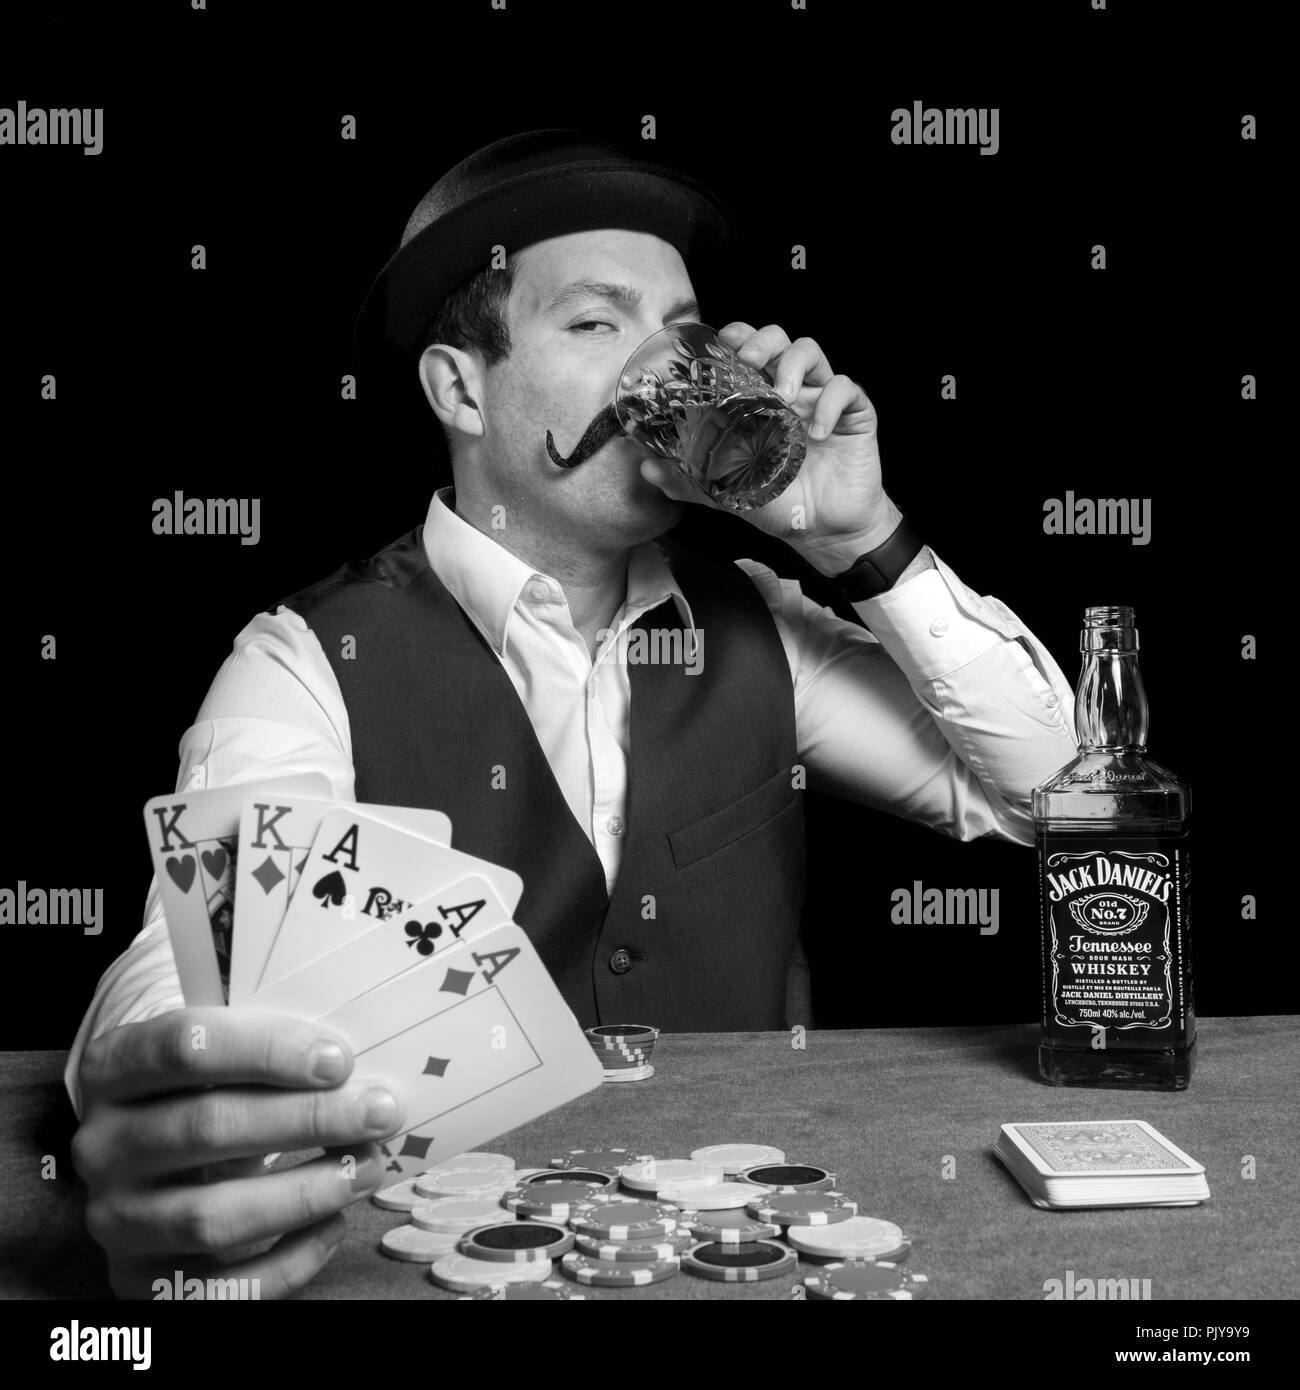 Homme avec chapeau melon de boire de l'alcool et de gagner une partie de poker Jack Daniel's playing cards jeu drôle de faux vintage photography Banque D'Images